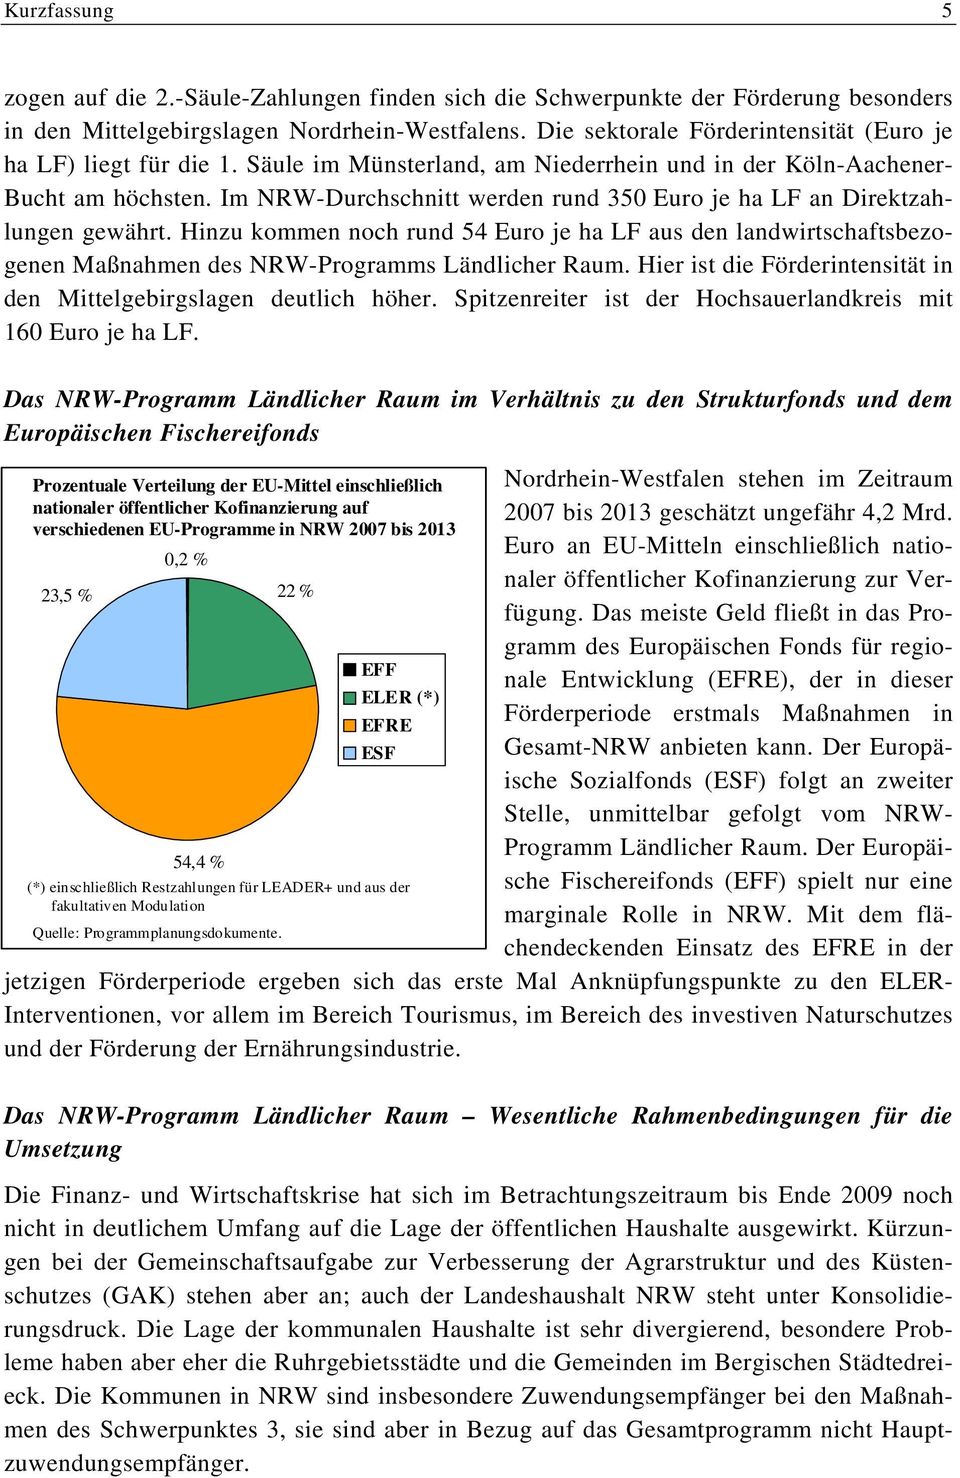 Im NRW-Durchschnitt werden rund 350 Euro je ha LF an Direktzahlungen gewährt. Hinzu kommen noch rund 54 Euro je ha LF aus den landwirtschaftsbezogenen Maßnahmen des NRW-Programms Ländlicher Raum.